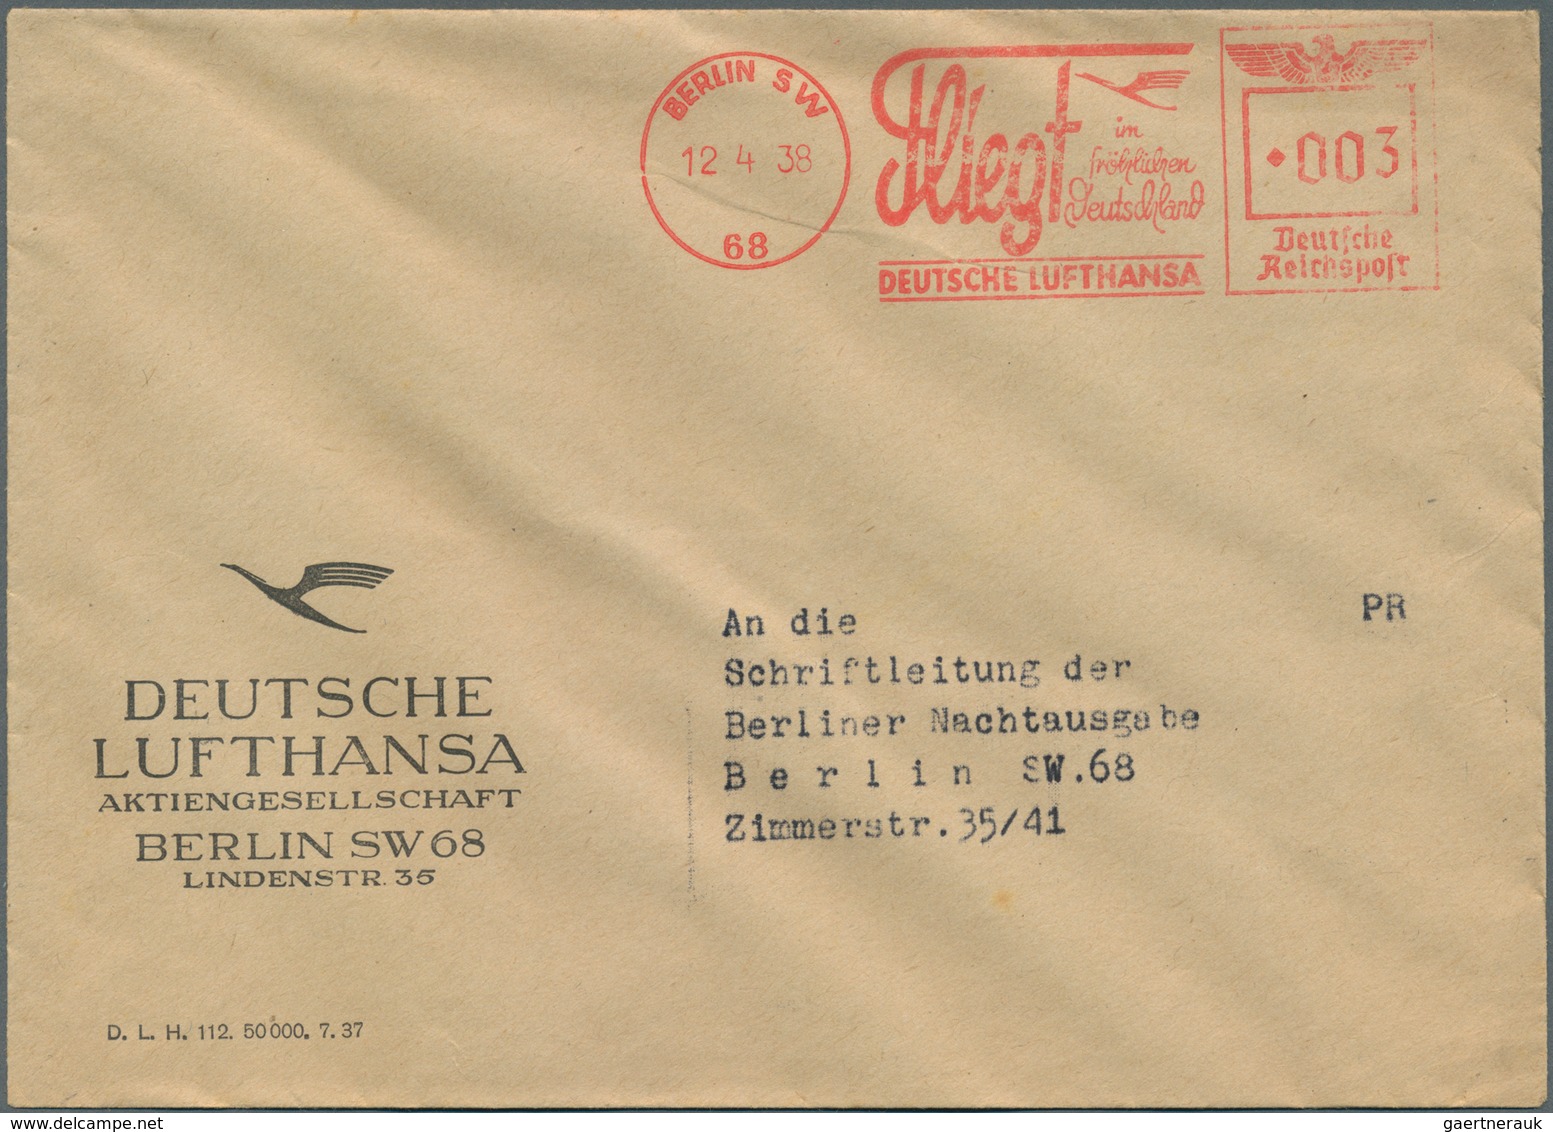 25096 Thematik: Flugzeuge, Luftfahrt / airoplanes, aviation: 1933/1941, kleine Dokumentation Lufthansa/Jun